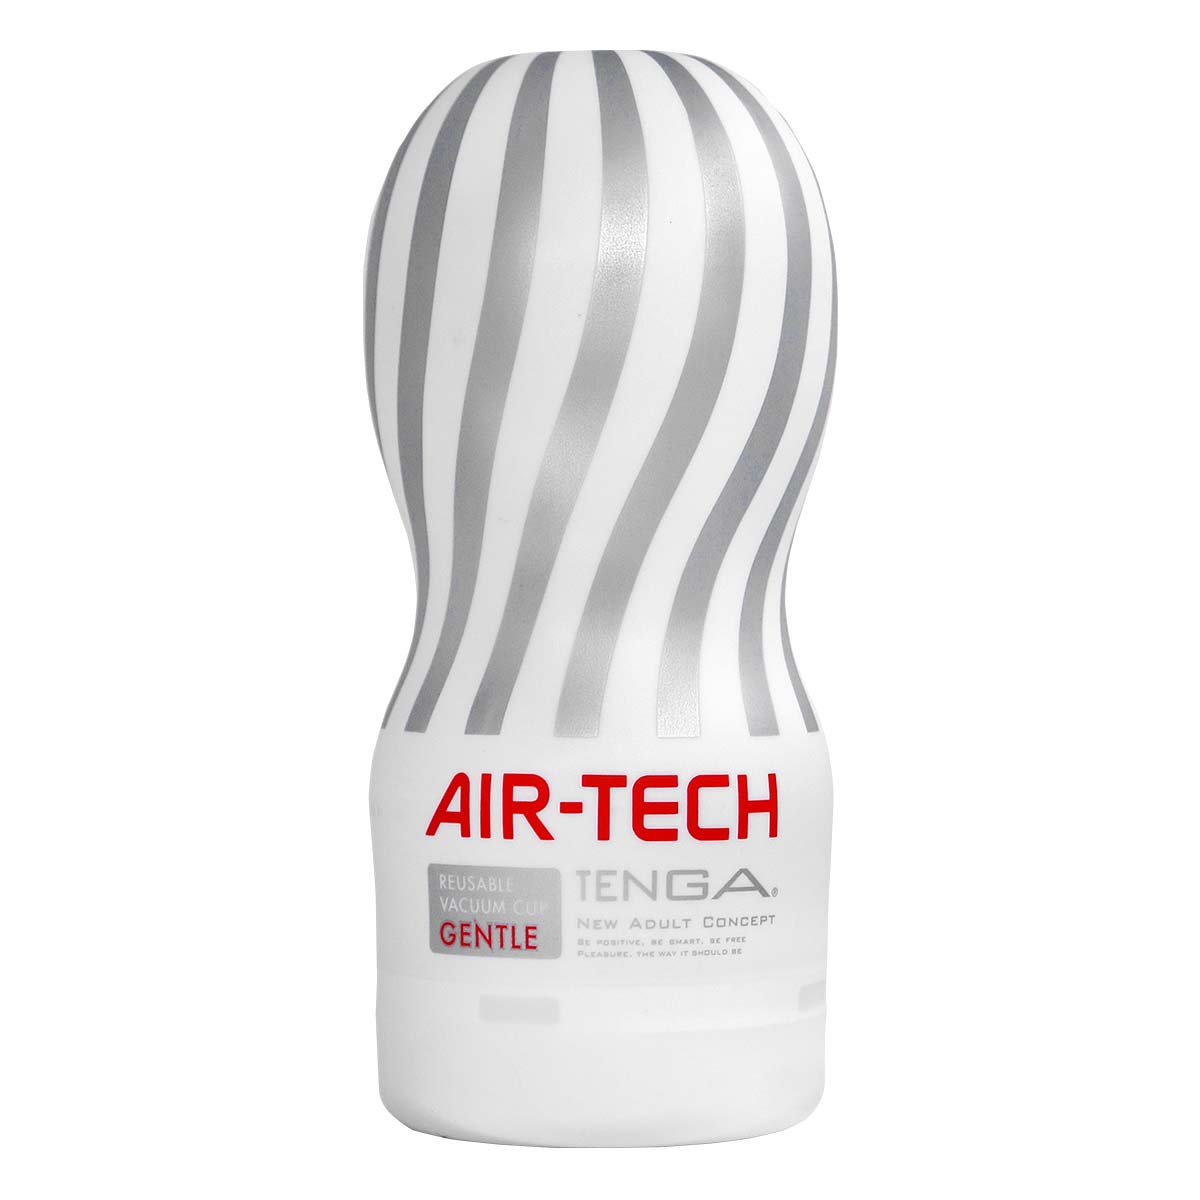 TENGA AIR-TECH Reusable Vacuum CUP GENTLE-thumb_2